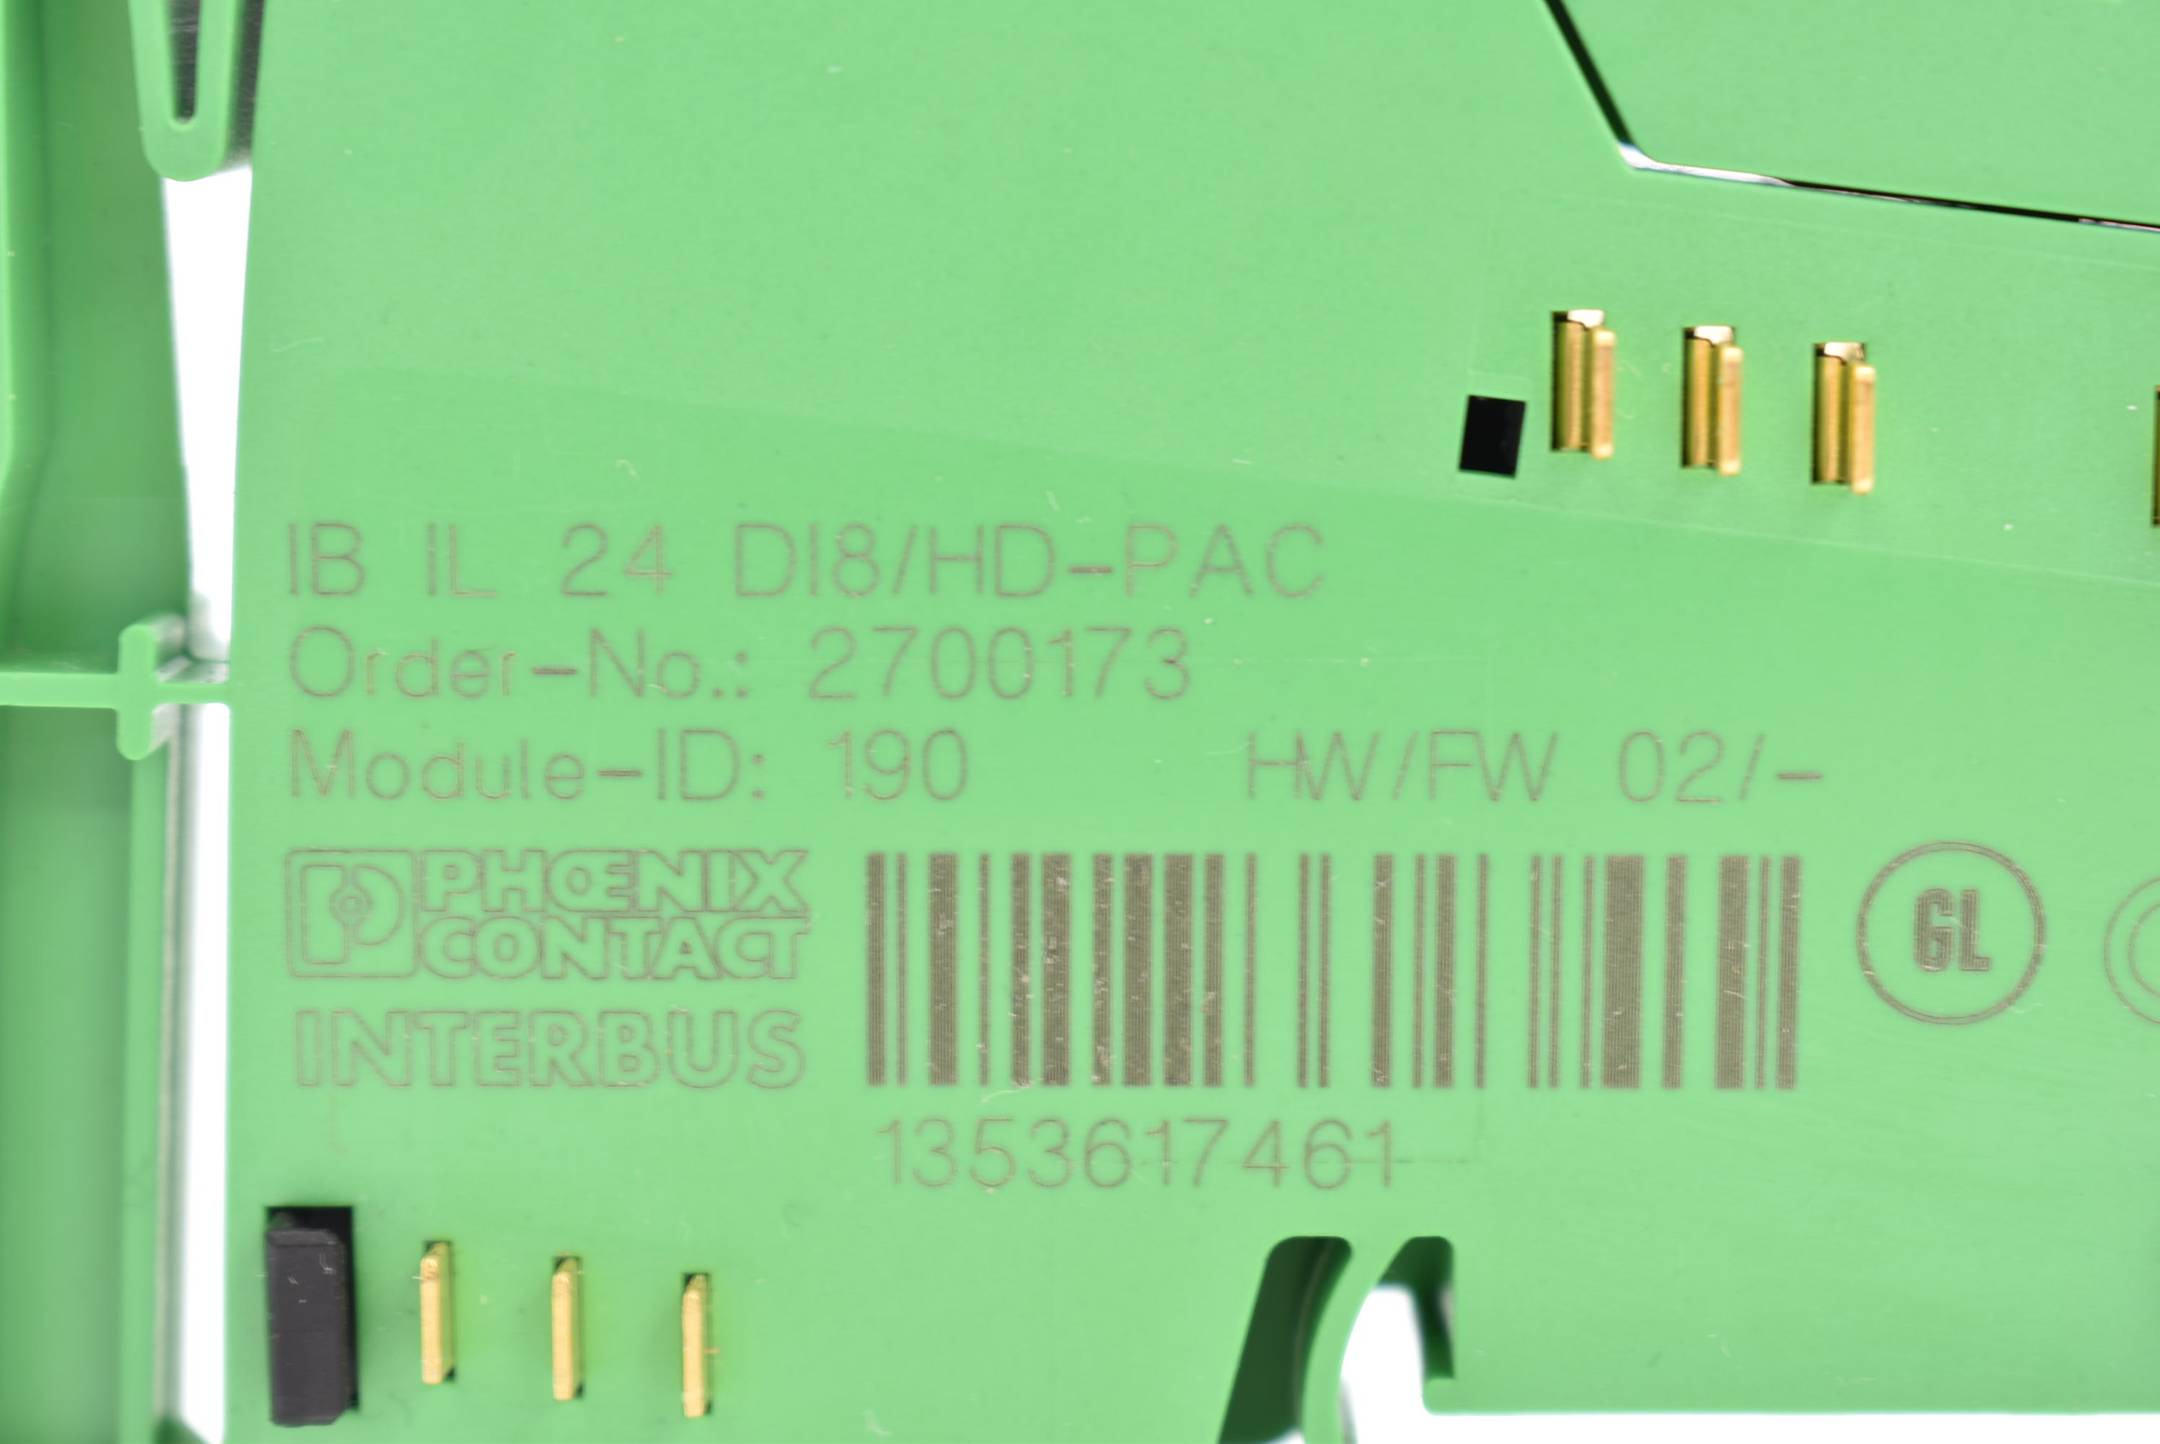 Phoenix Contact Digitalmodul IB IL 24 DI8/HD-PAC ( 2700173 )